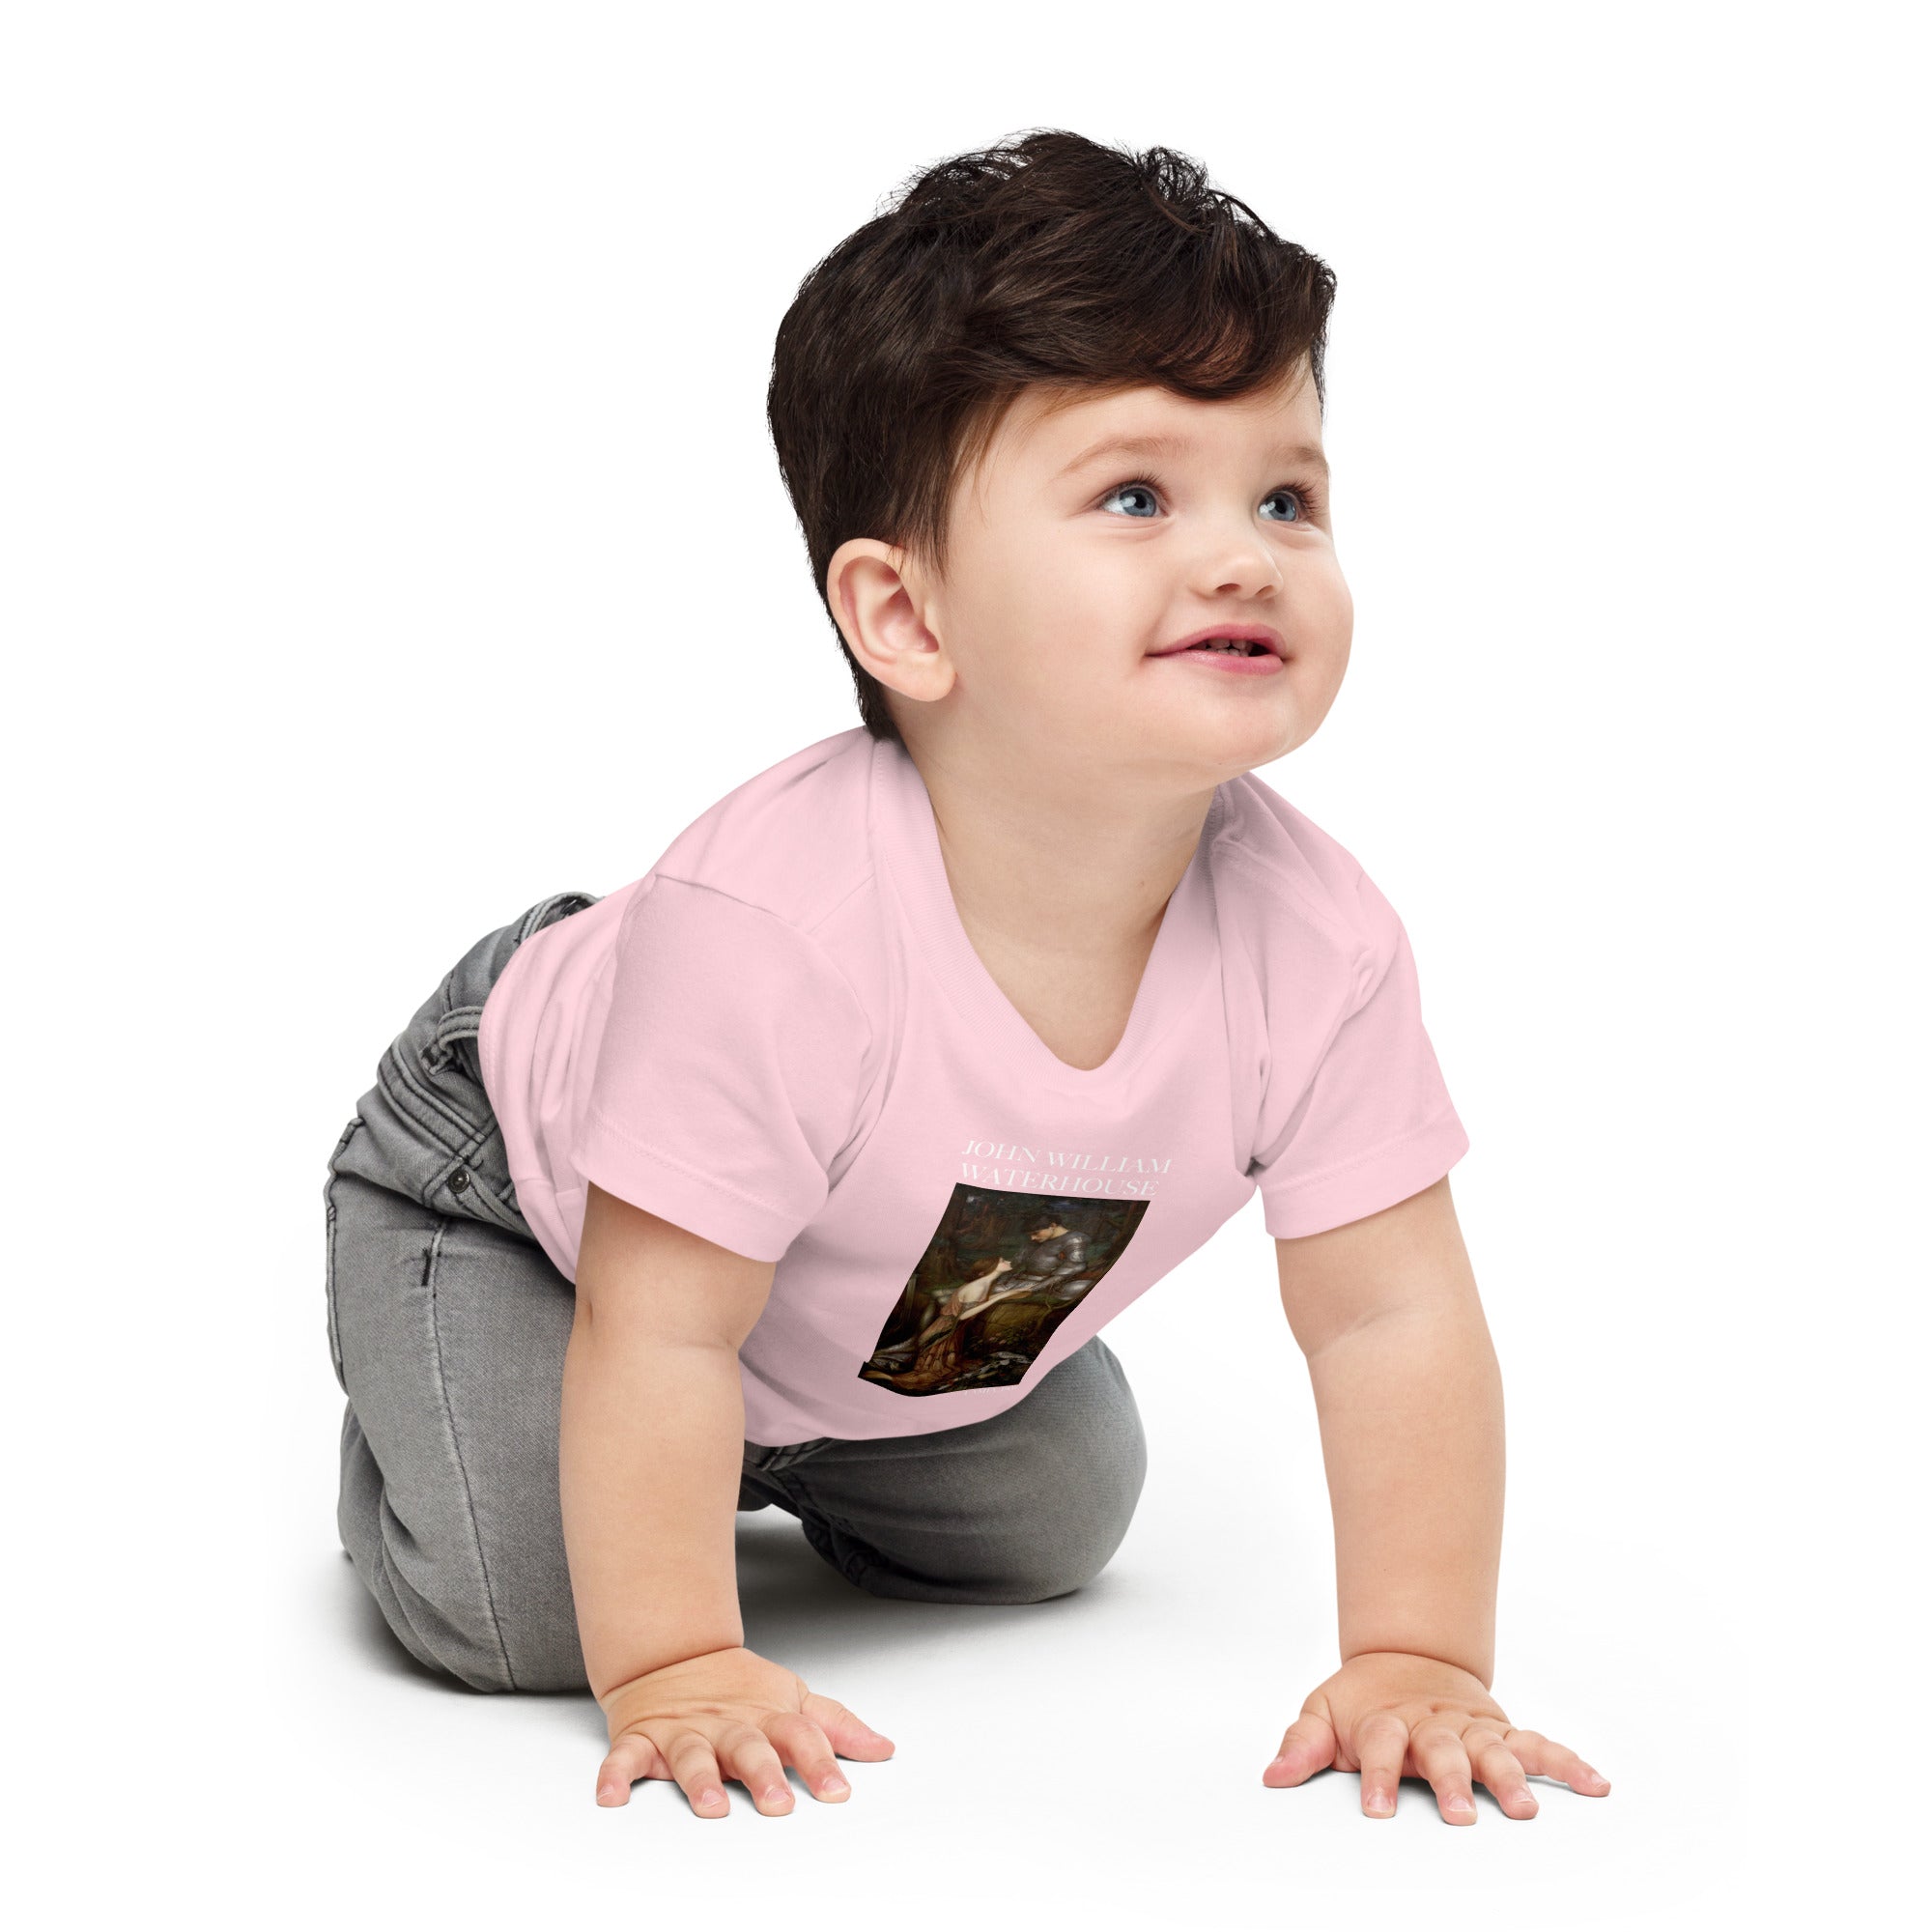 John William Waterhouse 'Lamia' Famous Painting Baby Staple T-Shirt | Premium Baby Art Tee